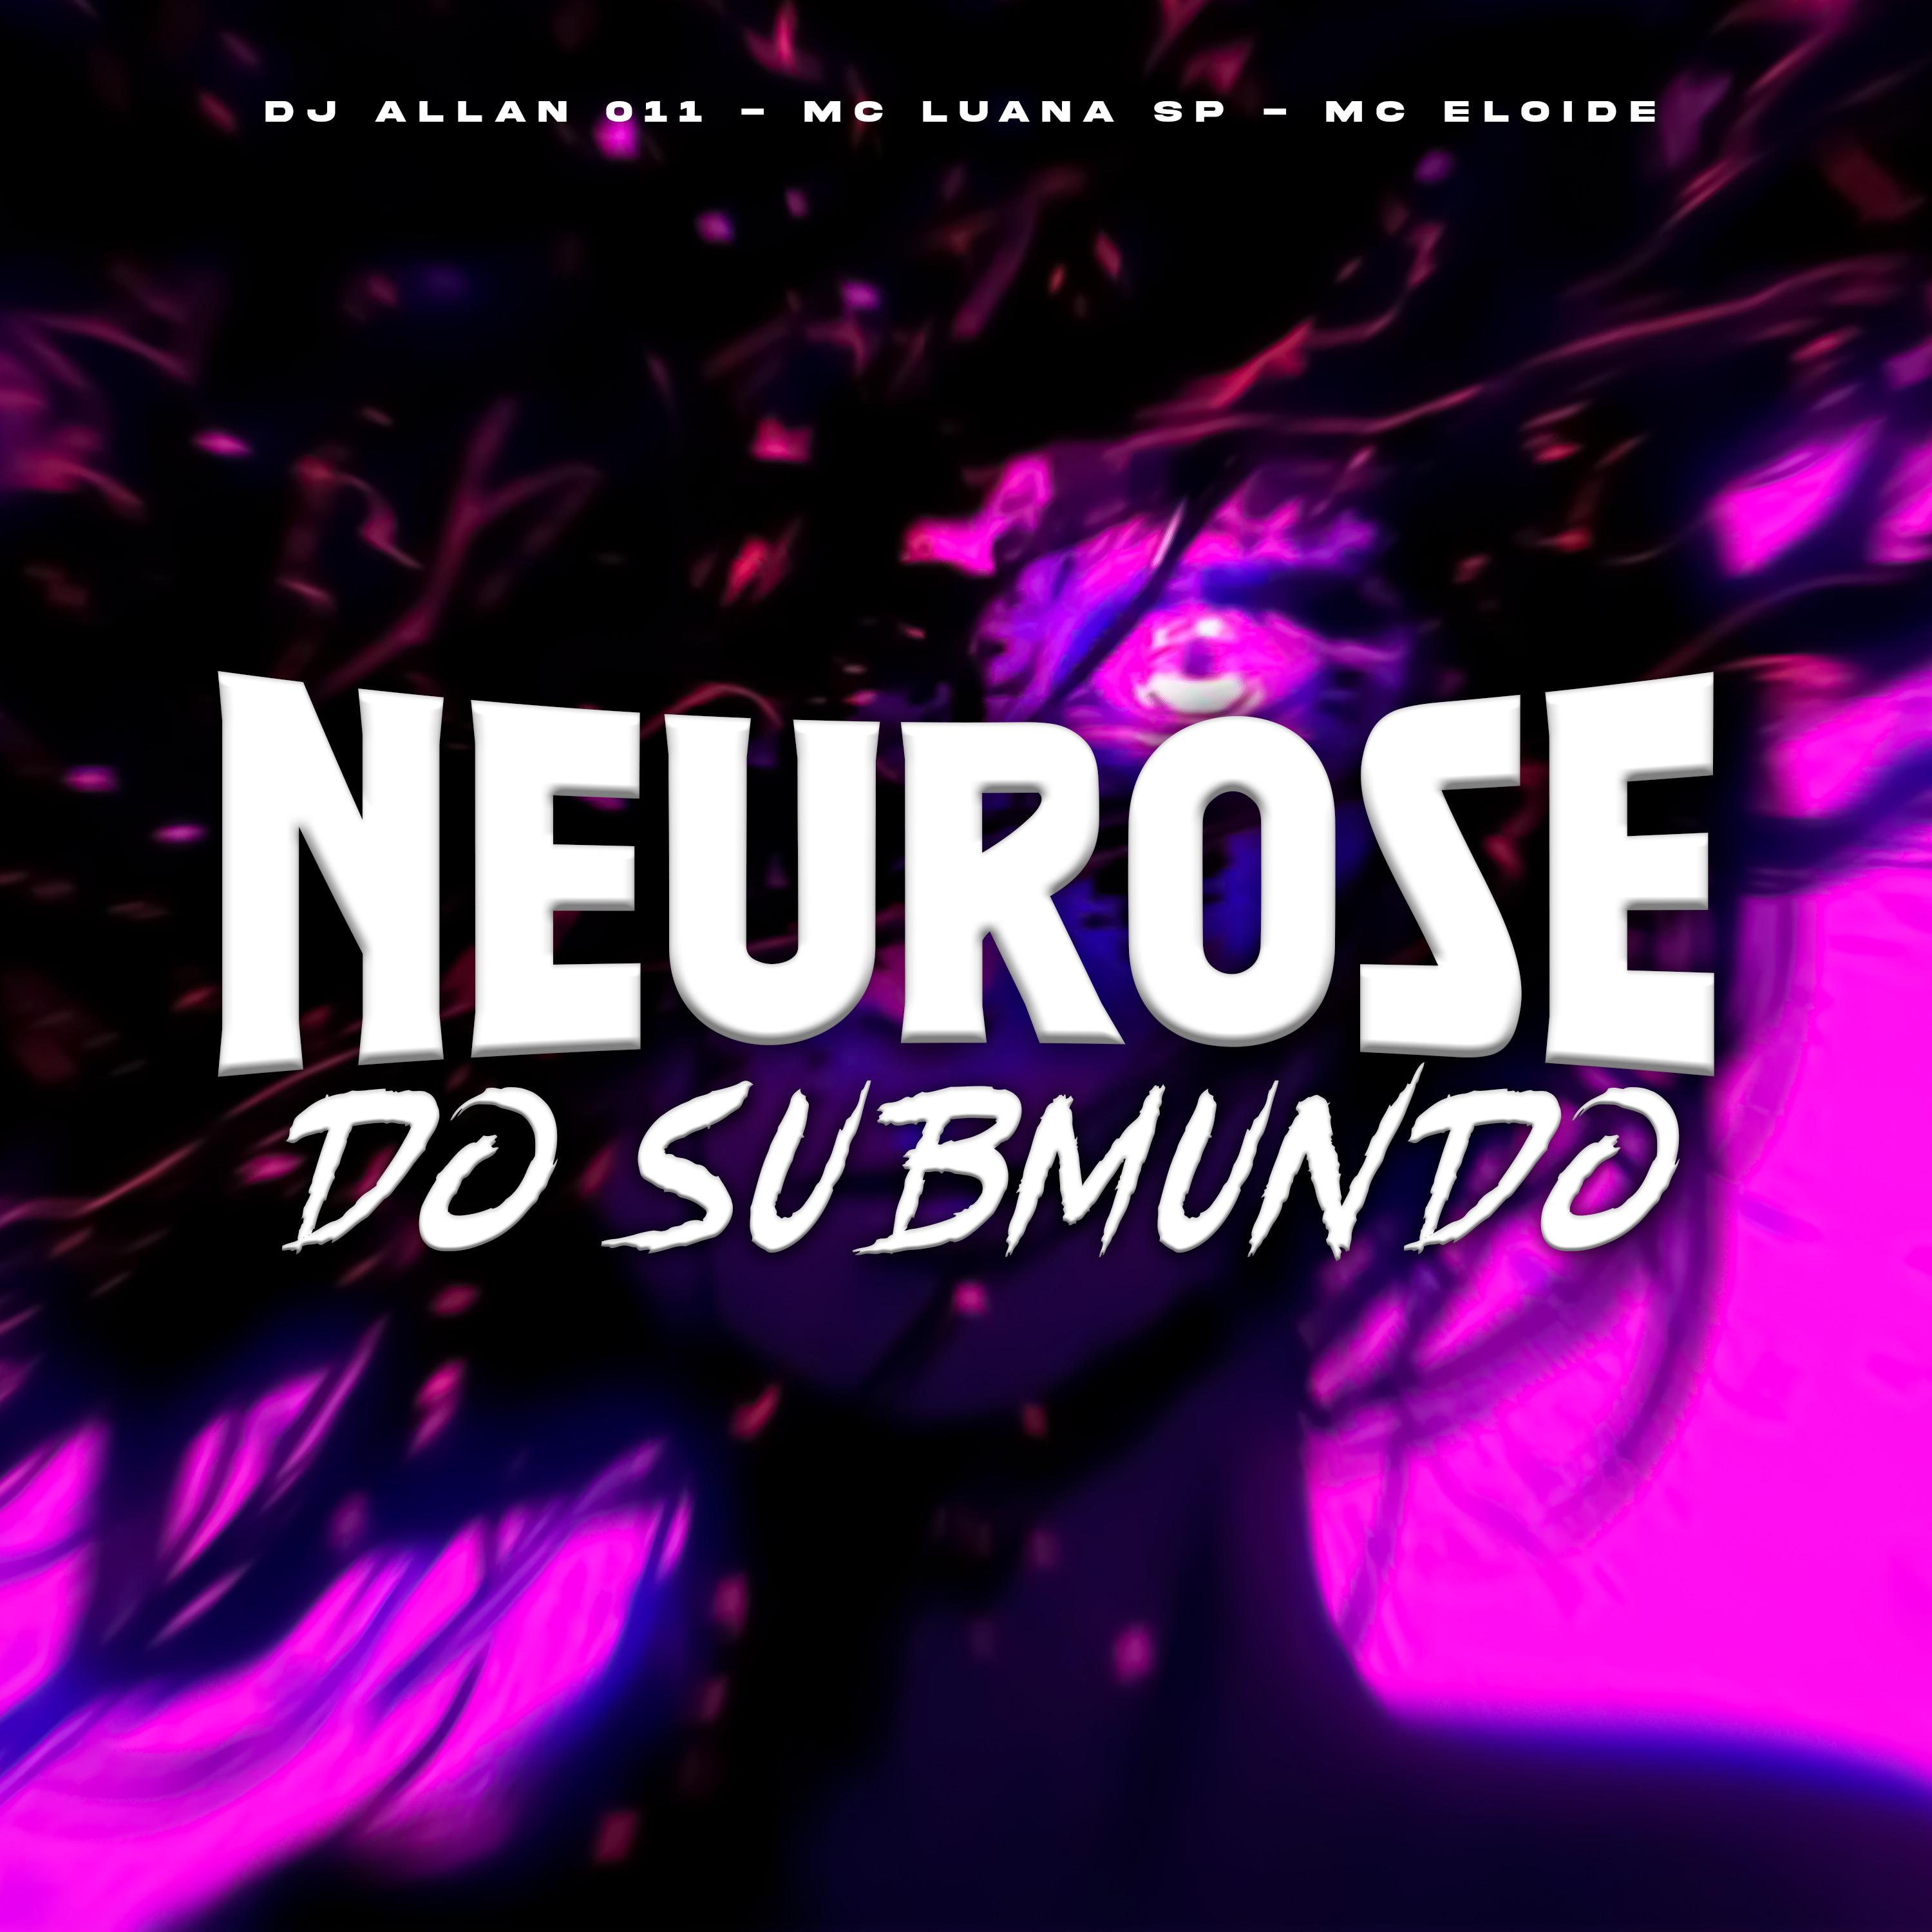 MC Luana SP - Neurose do Submundo